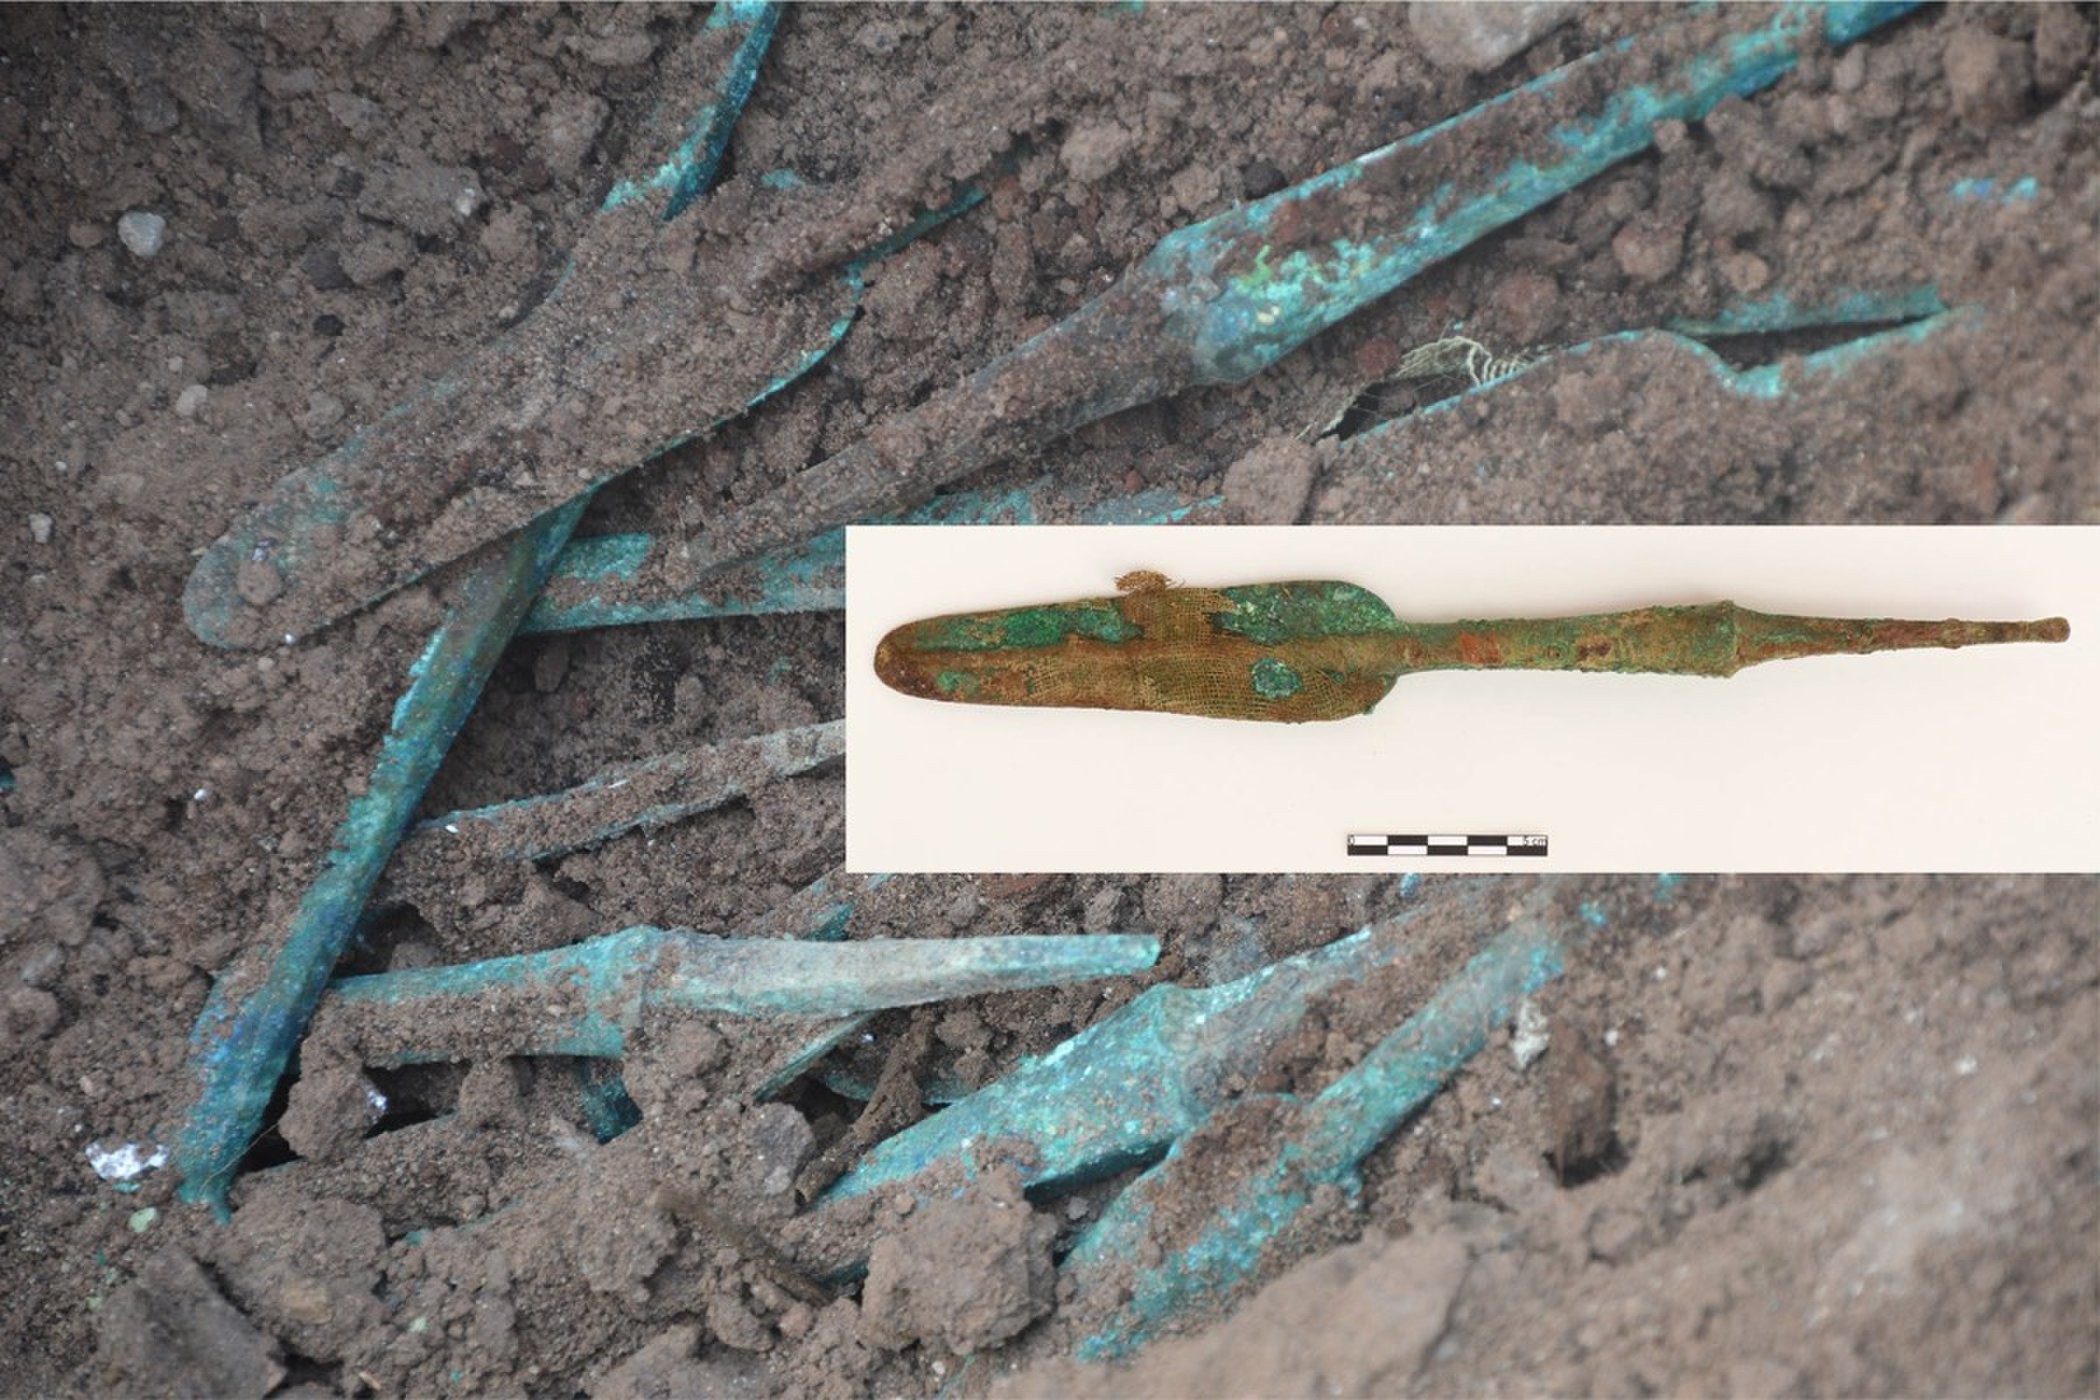 Pontas de lança feitas de bronze encontradas no sítio de Basur Höyük (Foto: Photograph by permission of the Basur Höyük Research Project; Antiquity 2018)